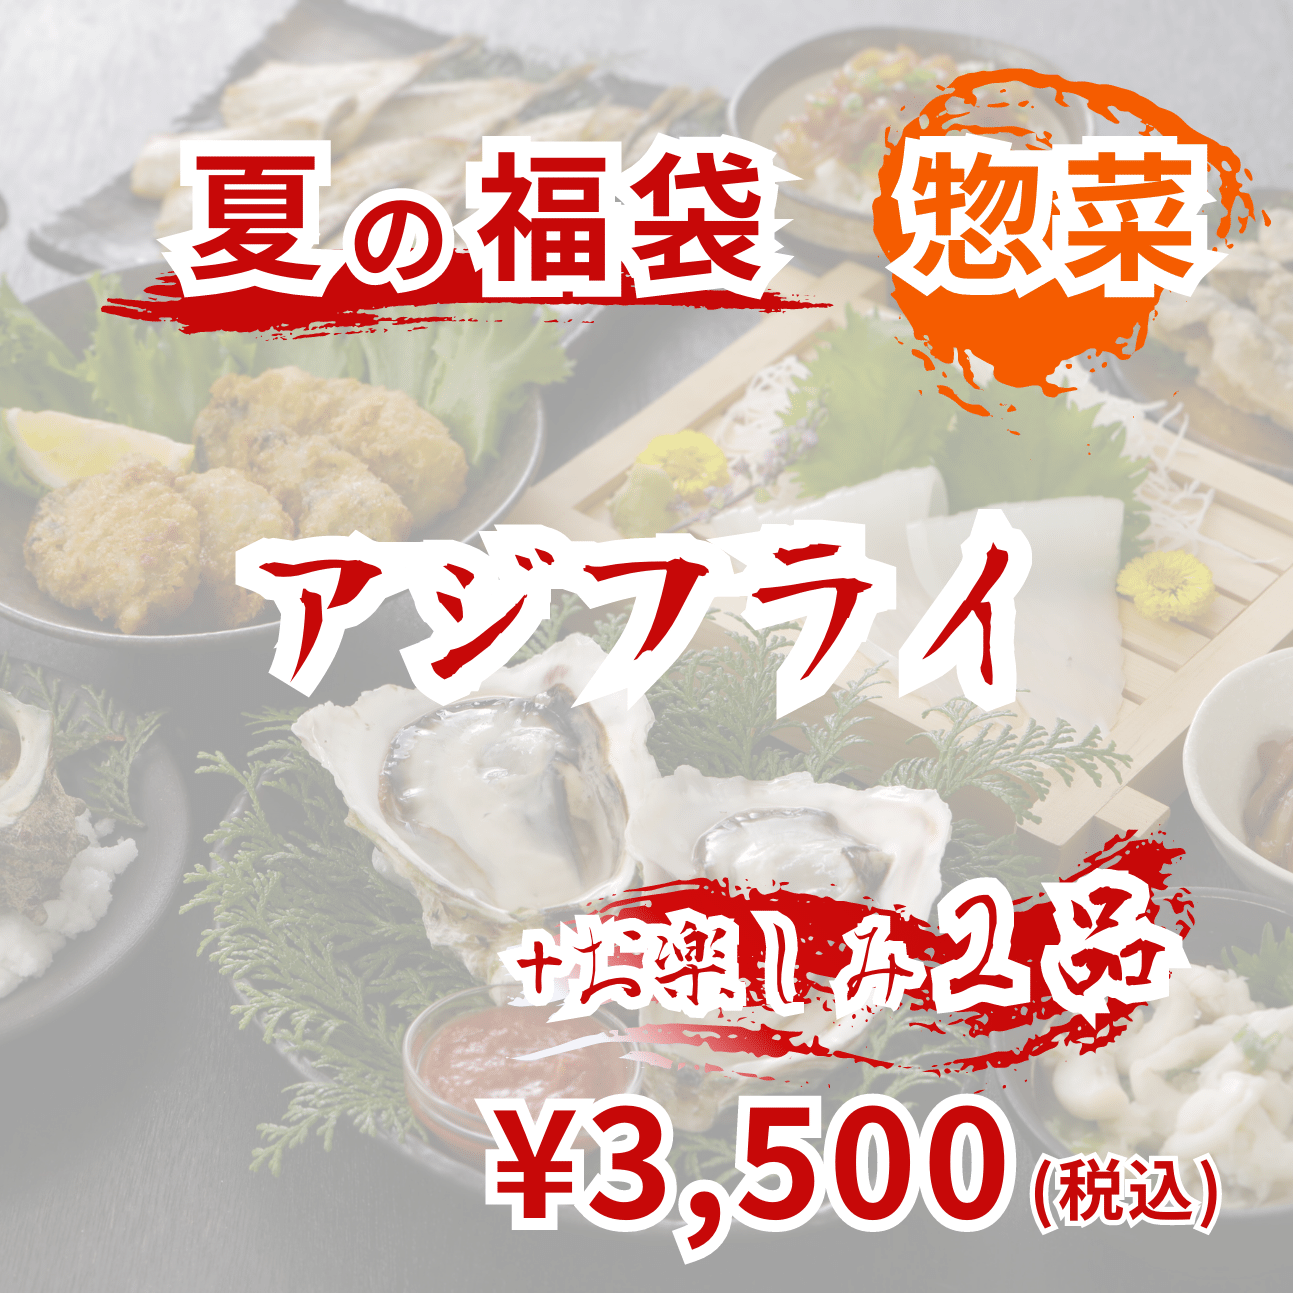 夏の福袋【惣菜3,500円】【送料無料】